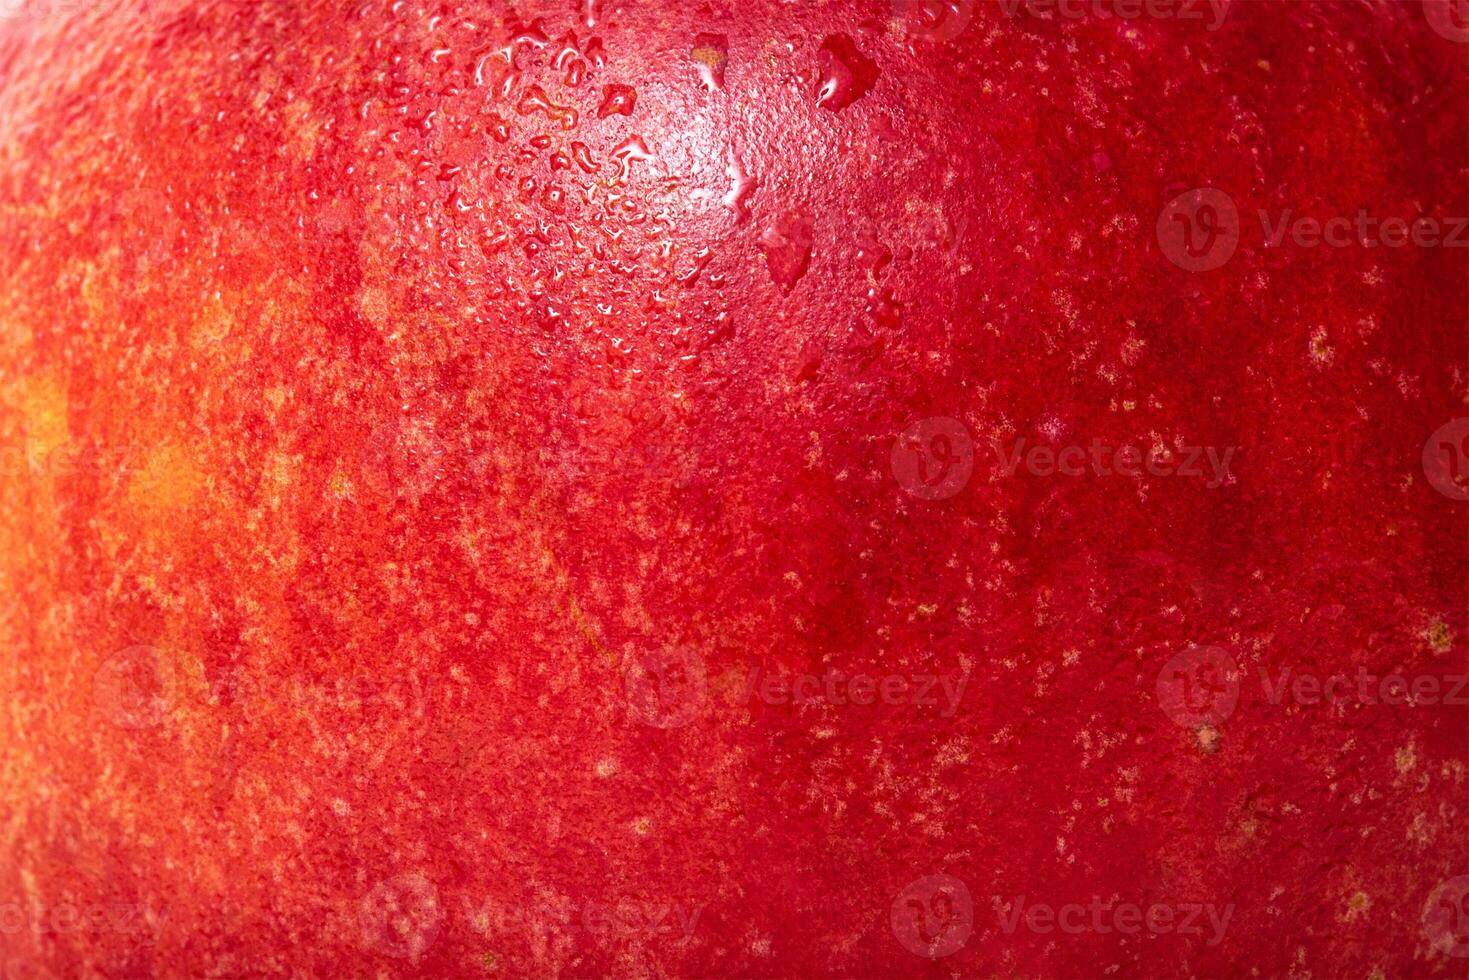 de textur av ett äpple är röd med gul. äpple hud med vatten droppar. foto